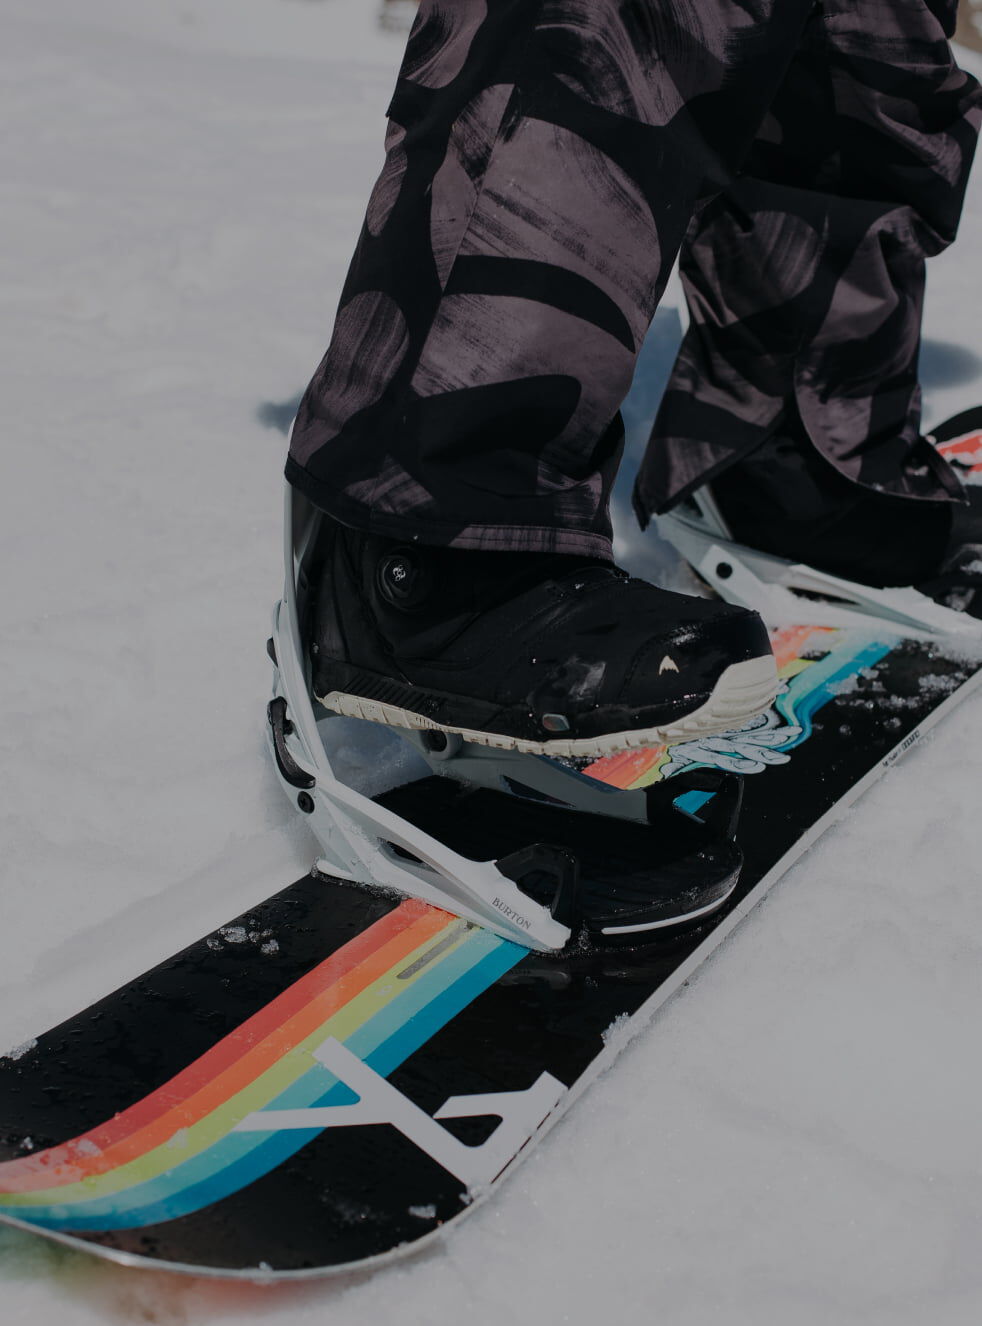 Burton Step On® スノーボードブーツ&バインディング | Burton Snowboards